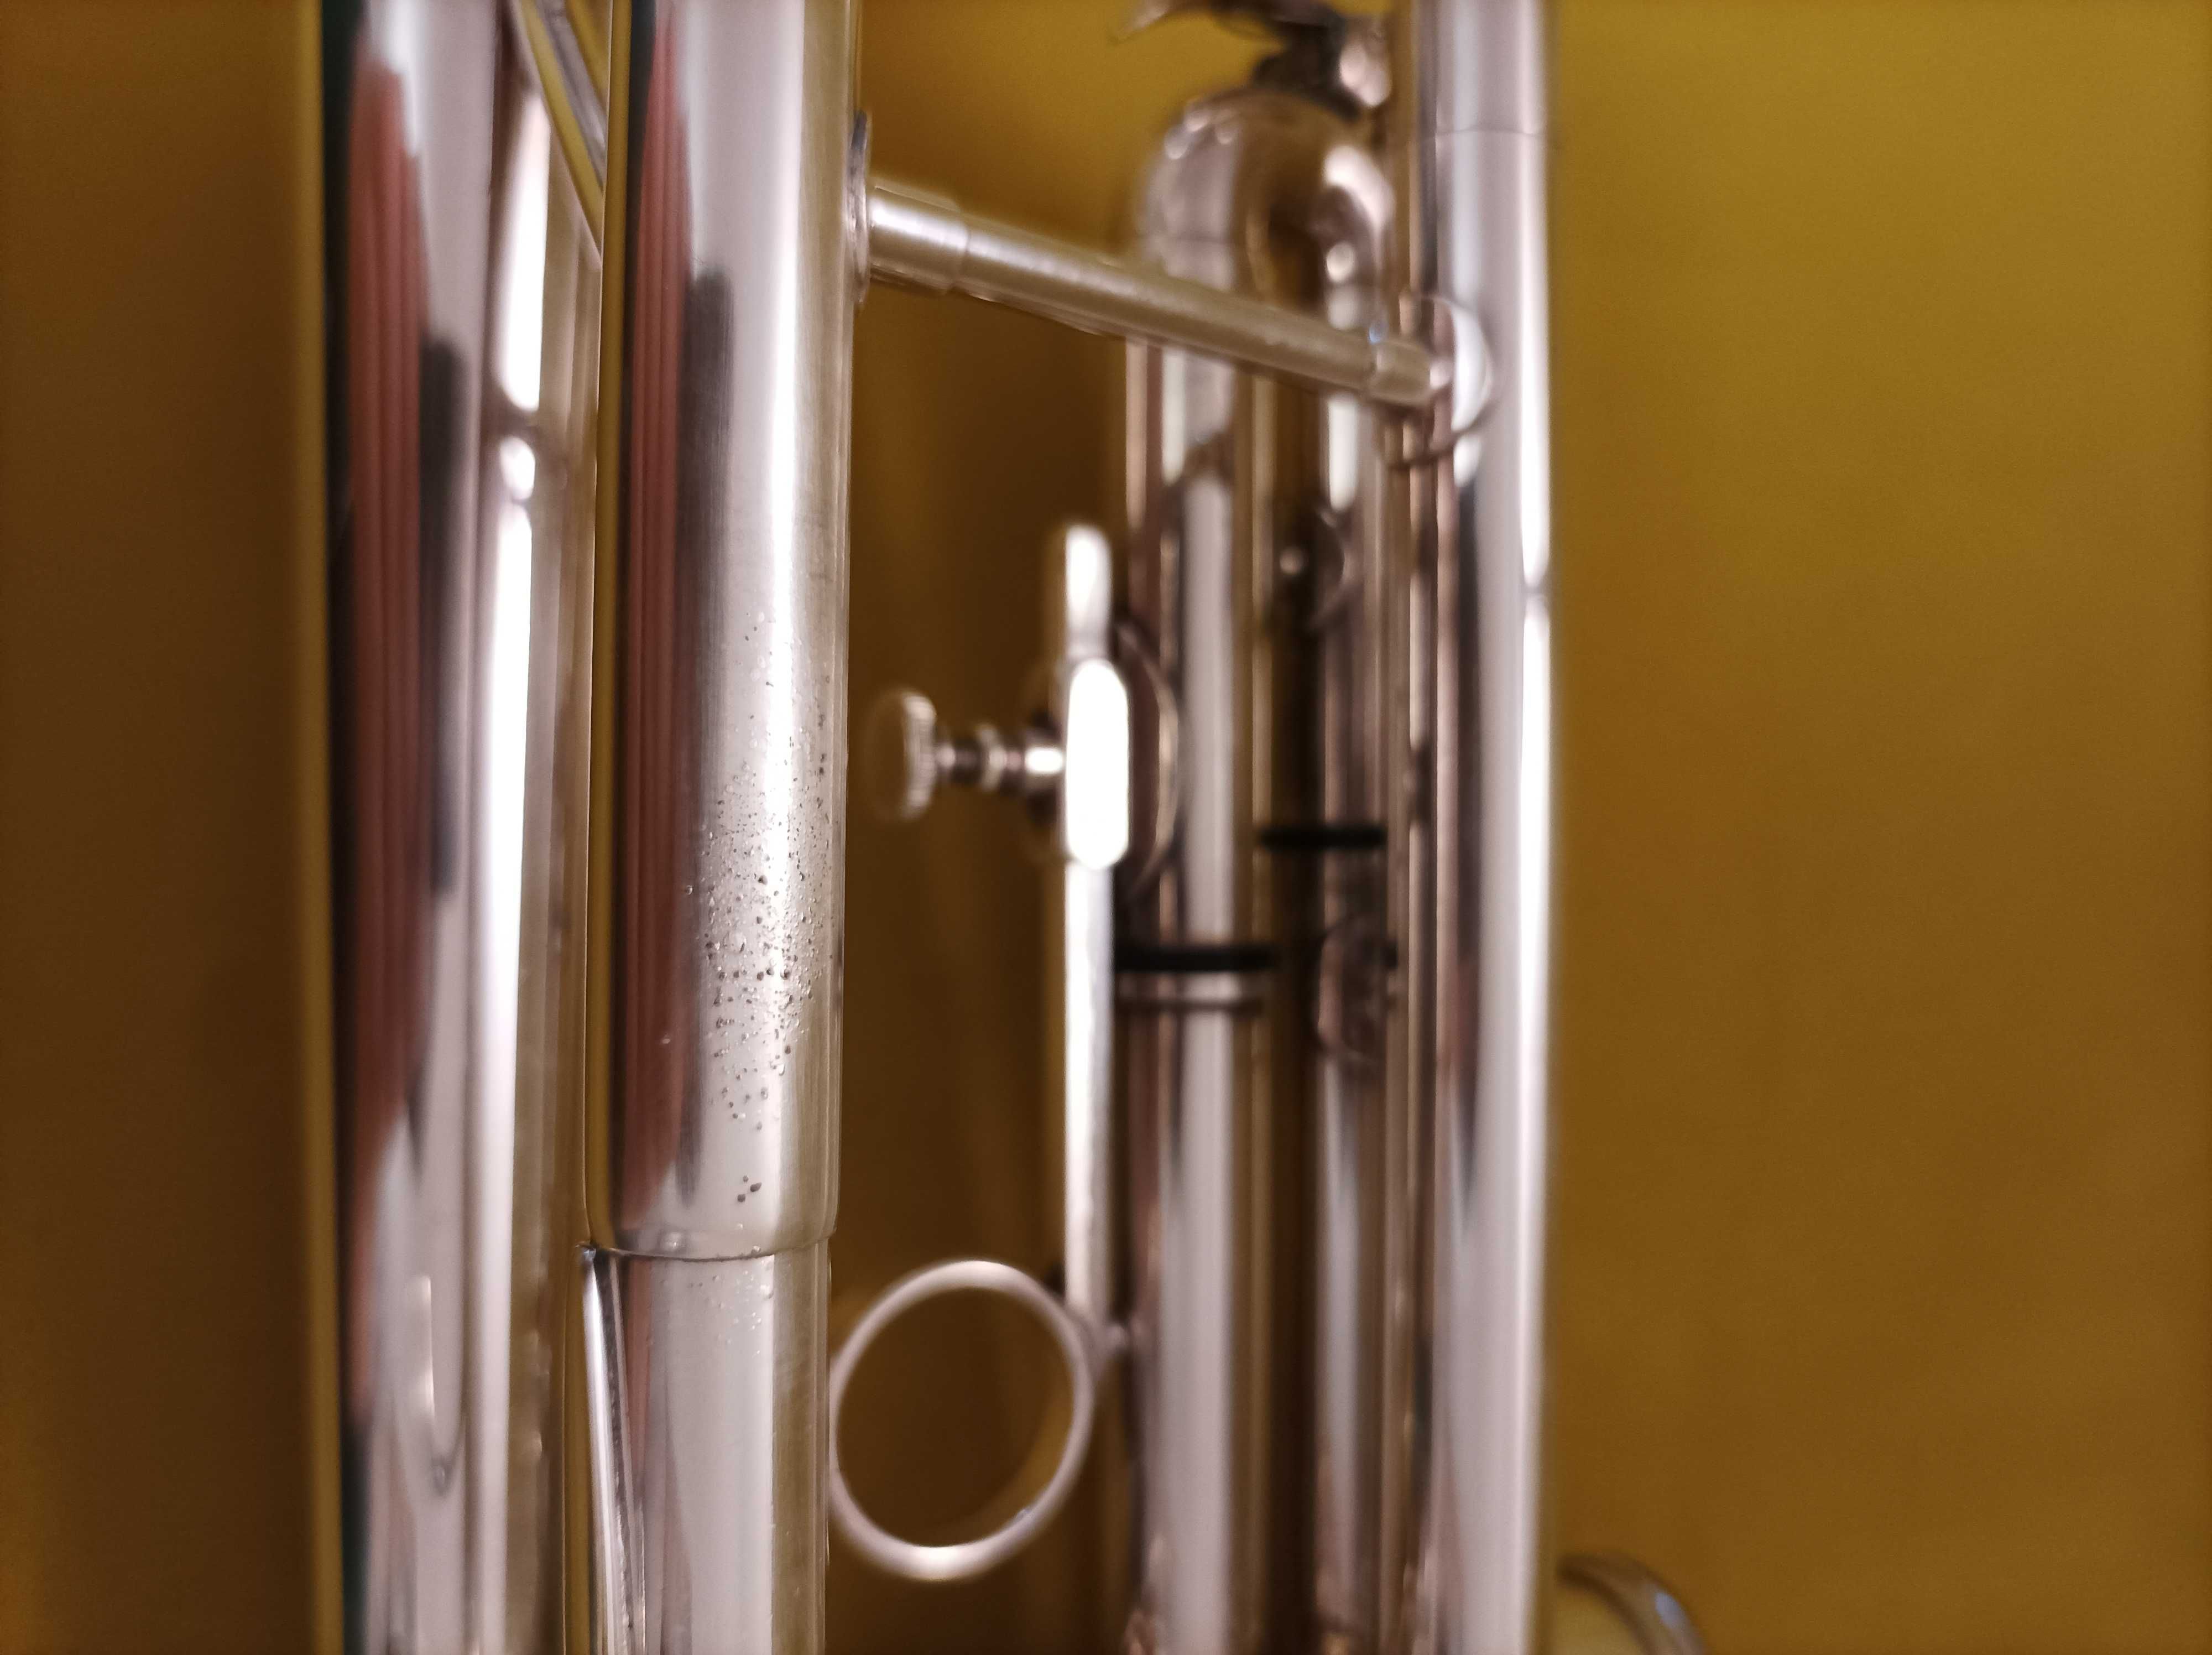 Рідкісний інструмент труба Besson London 1000L